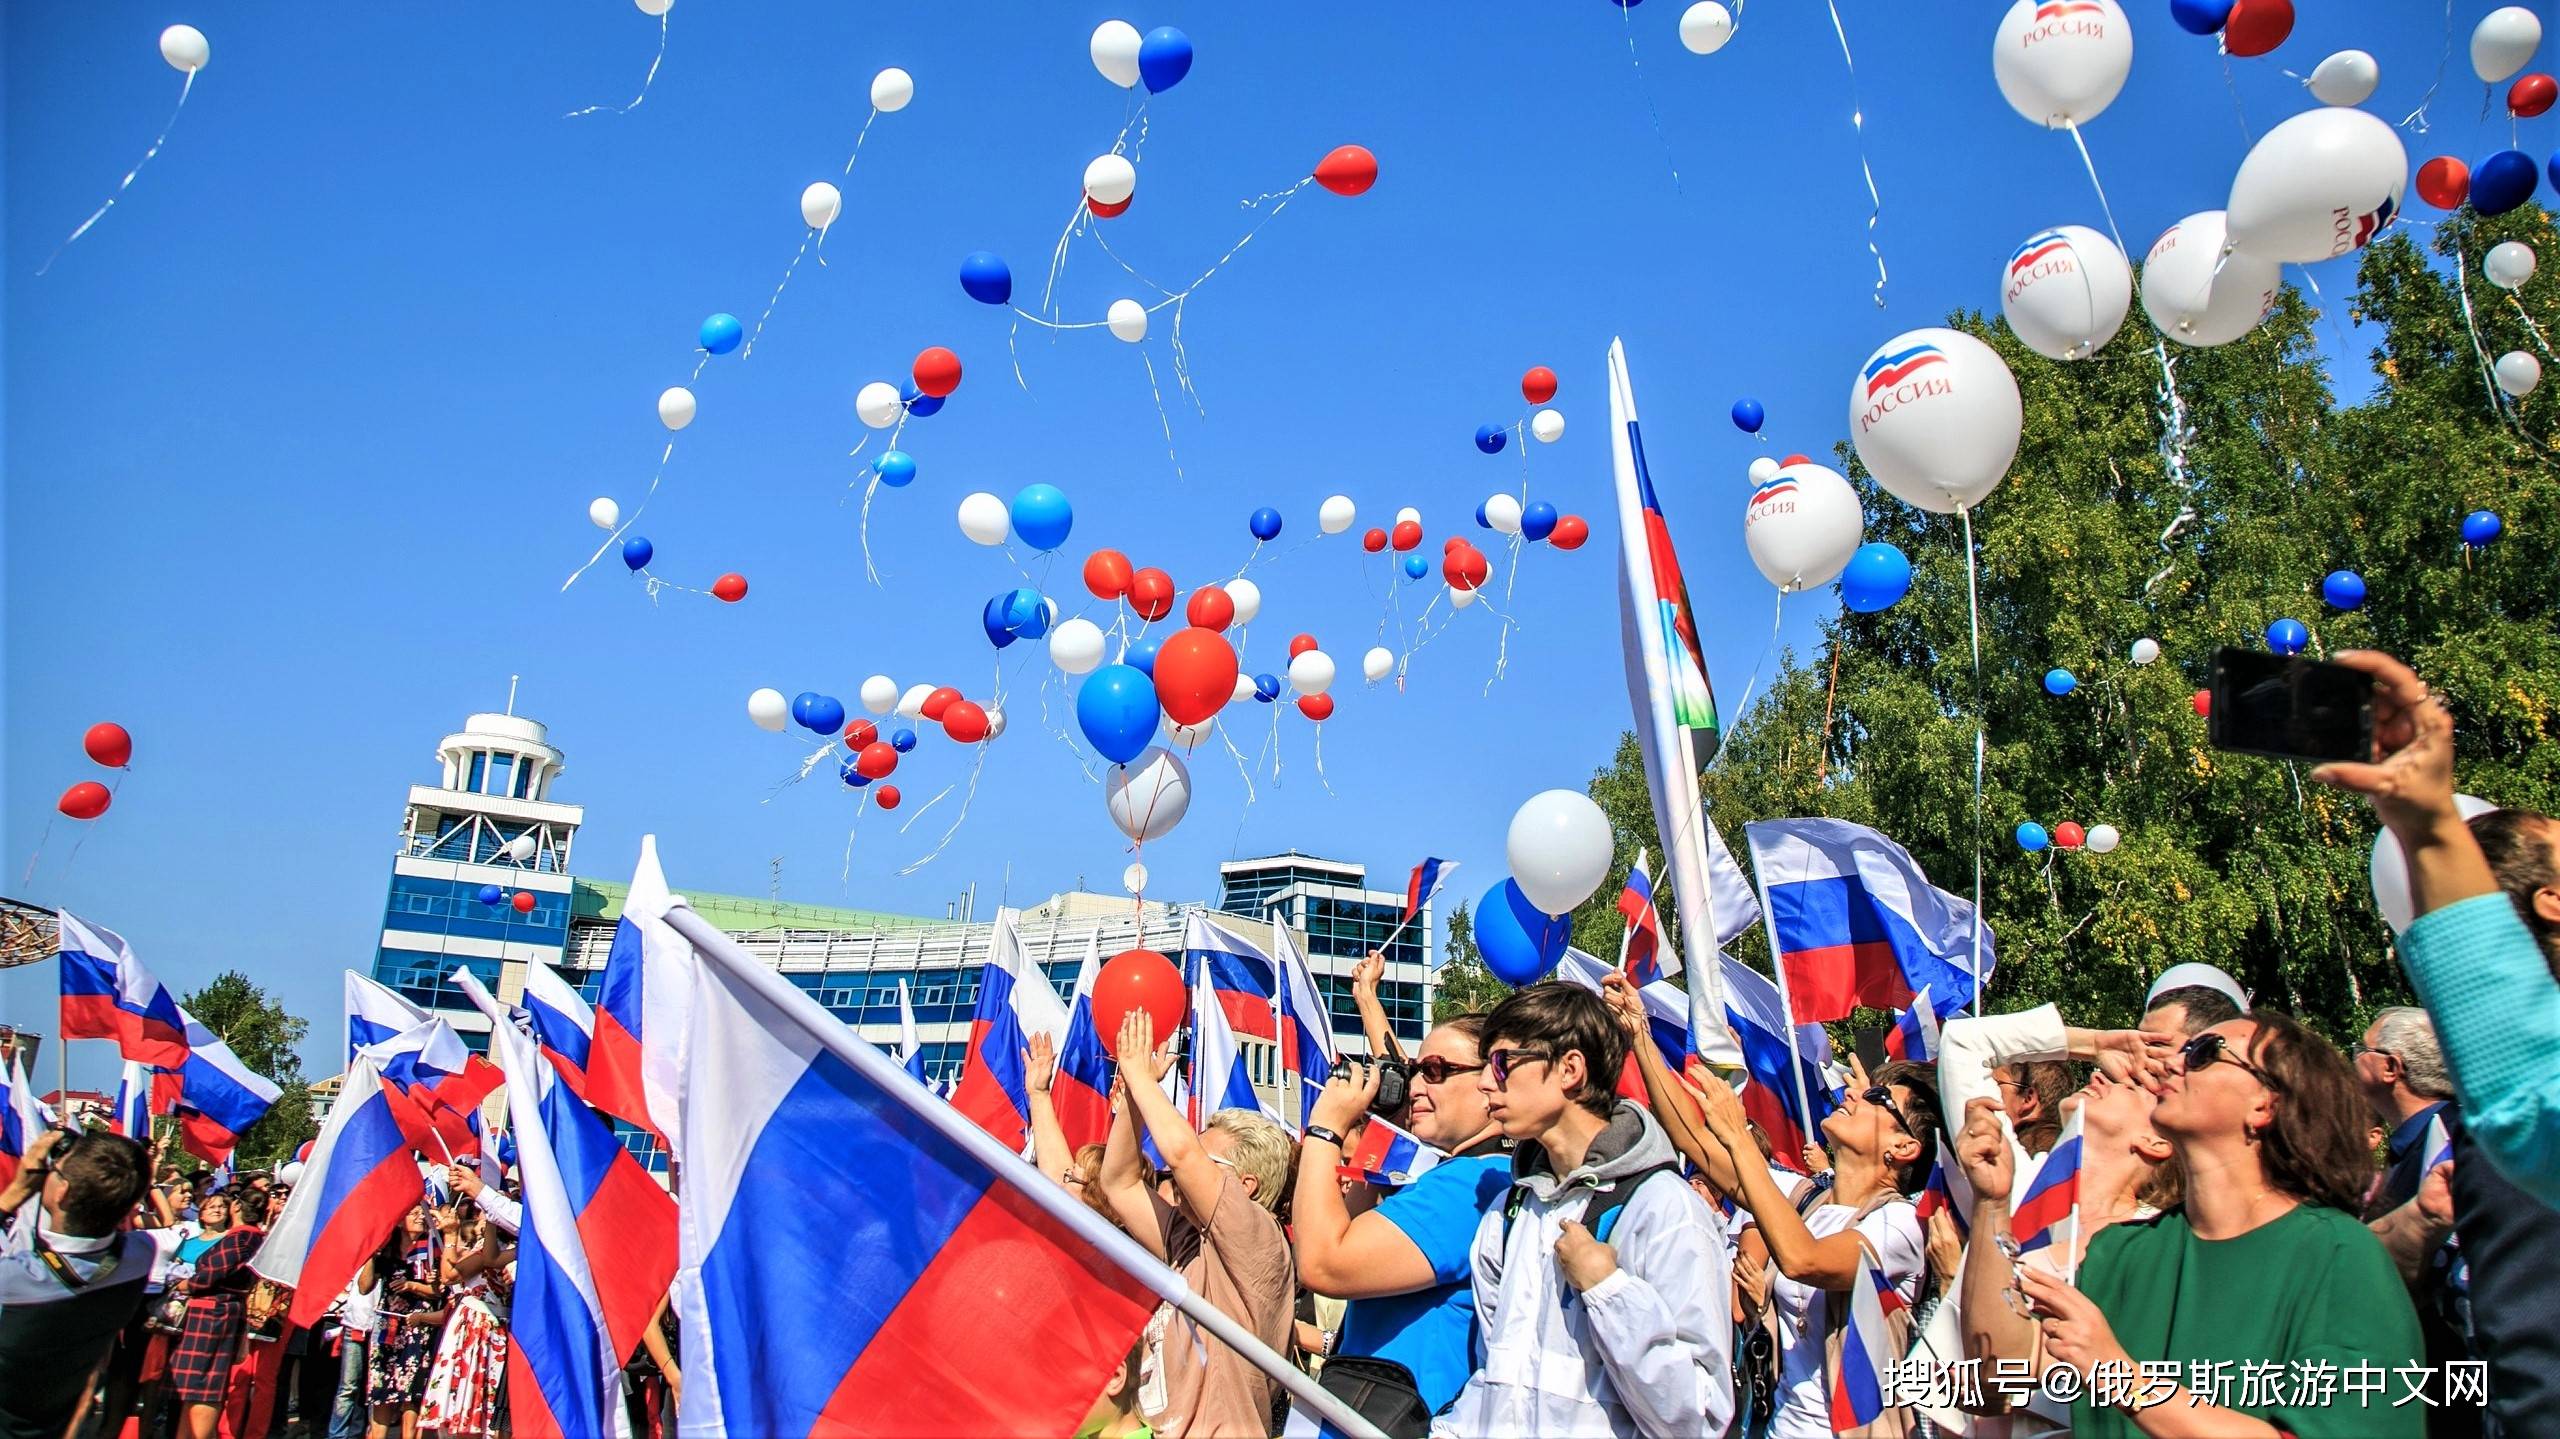 原创俄罗斯日今天是俄罗斯的国庆节